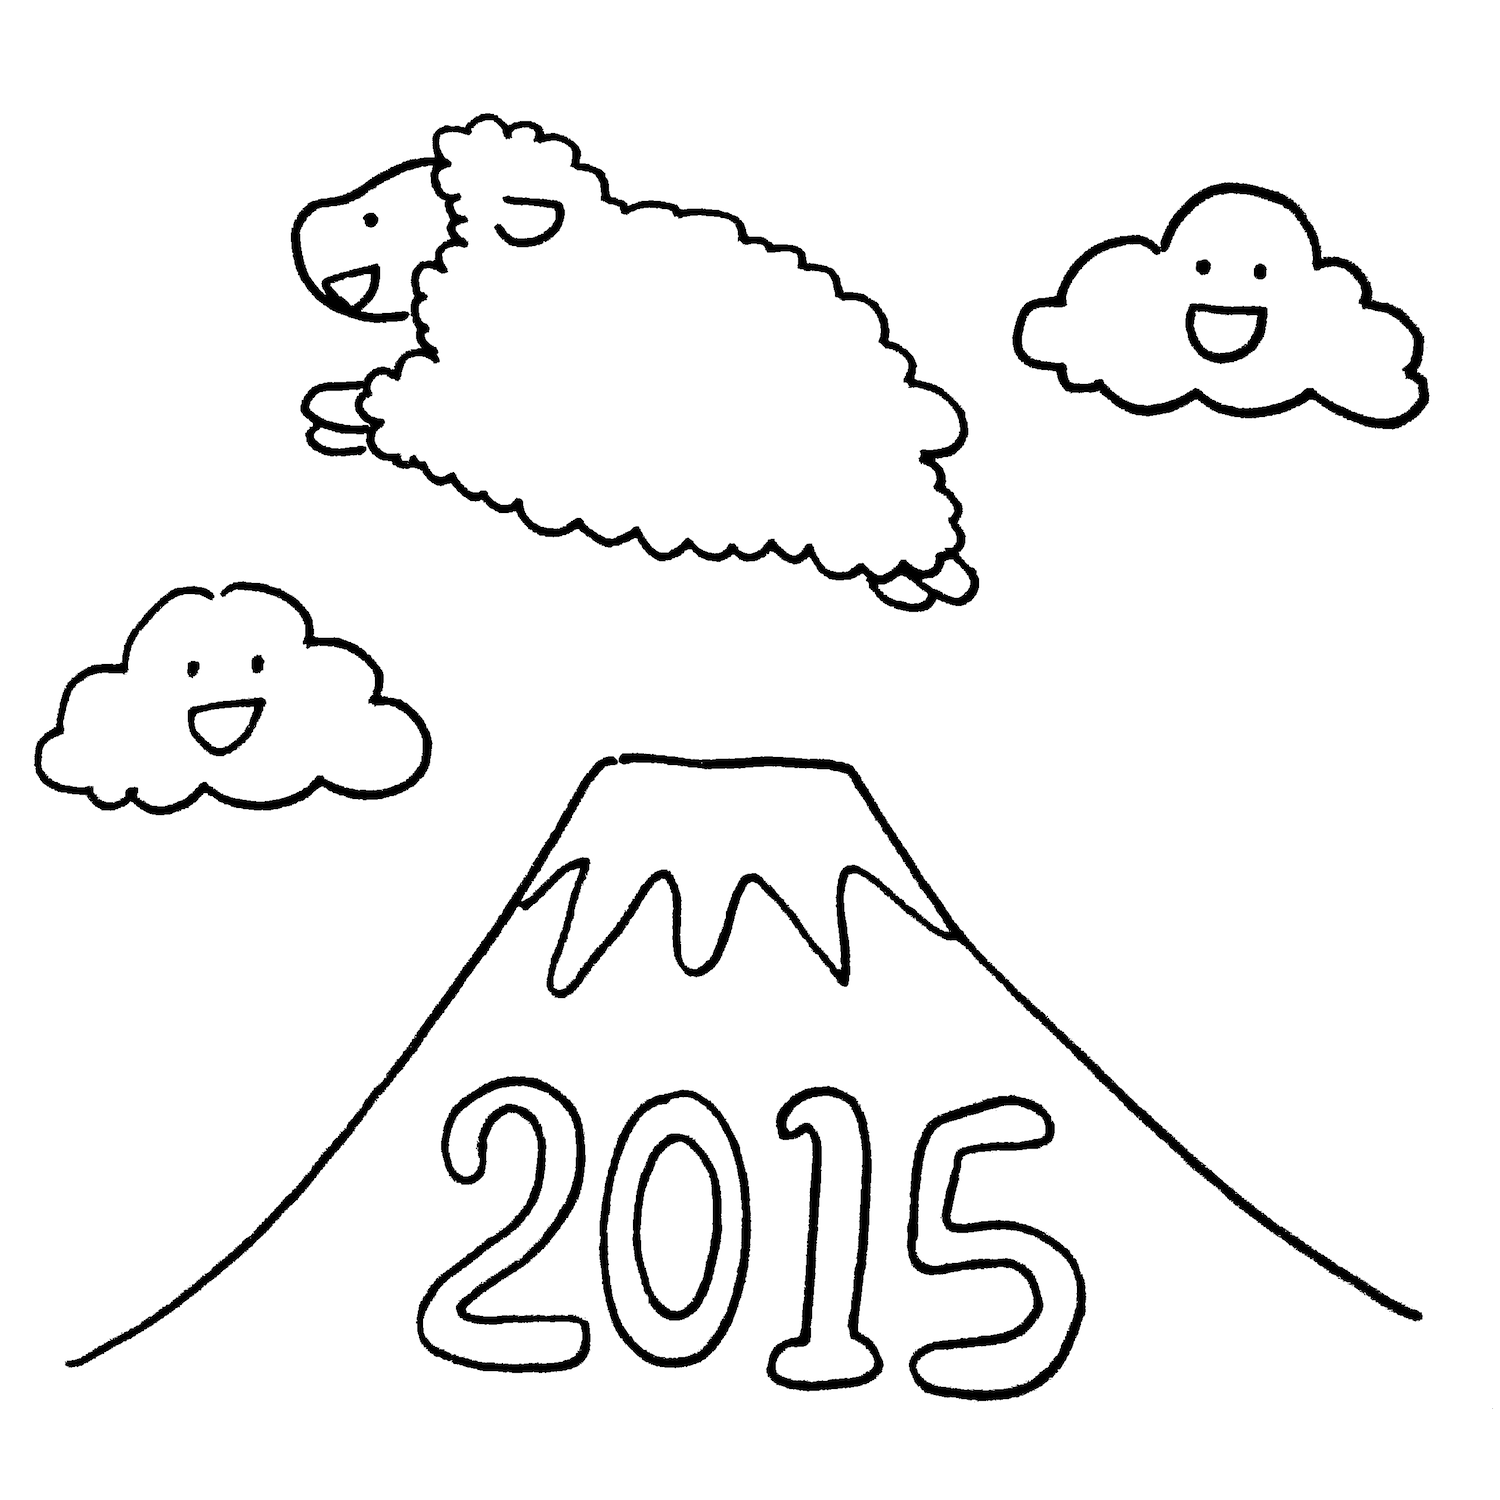 富士山を飛び越えて飛躍する羊 ひつじ15年賀状素材 無料イラスト配布サイトマンガトップ